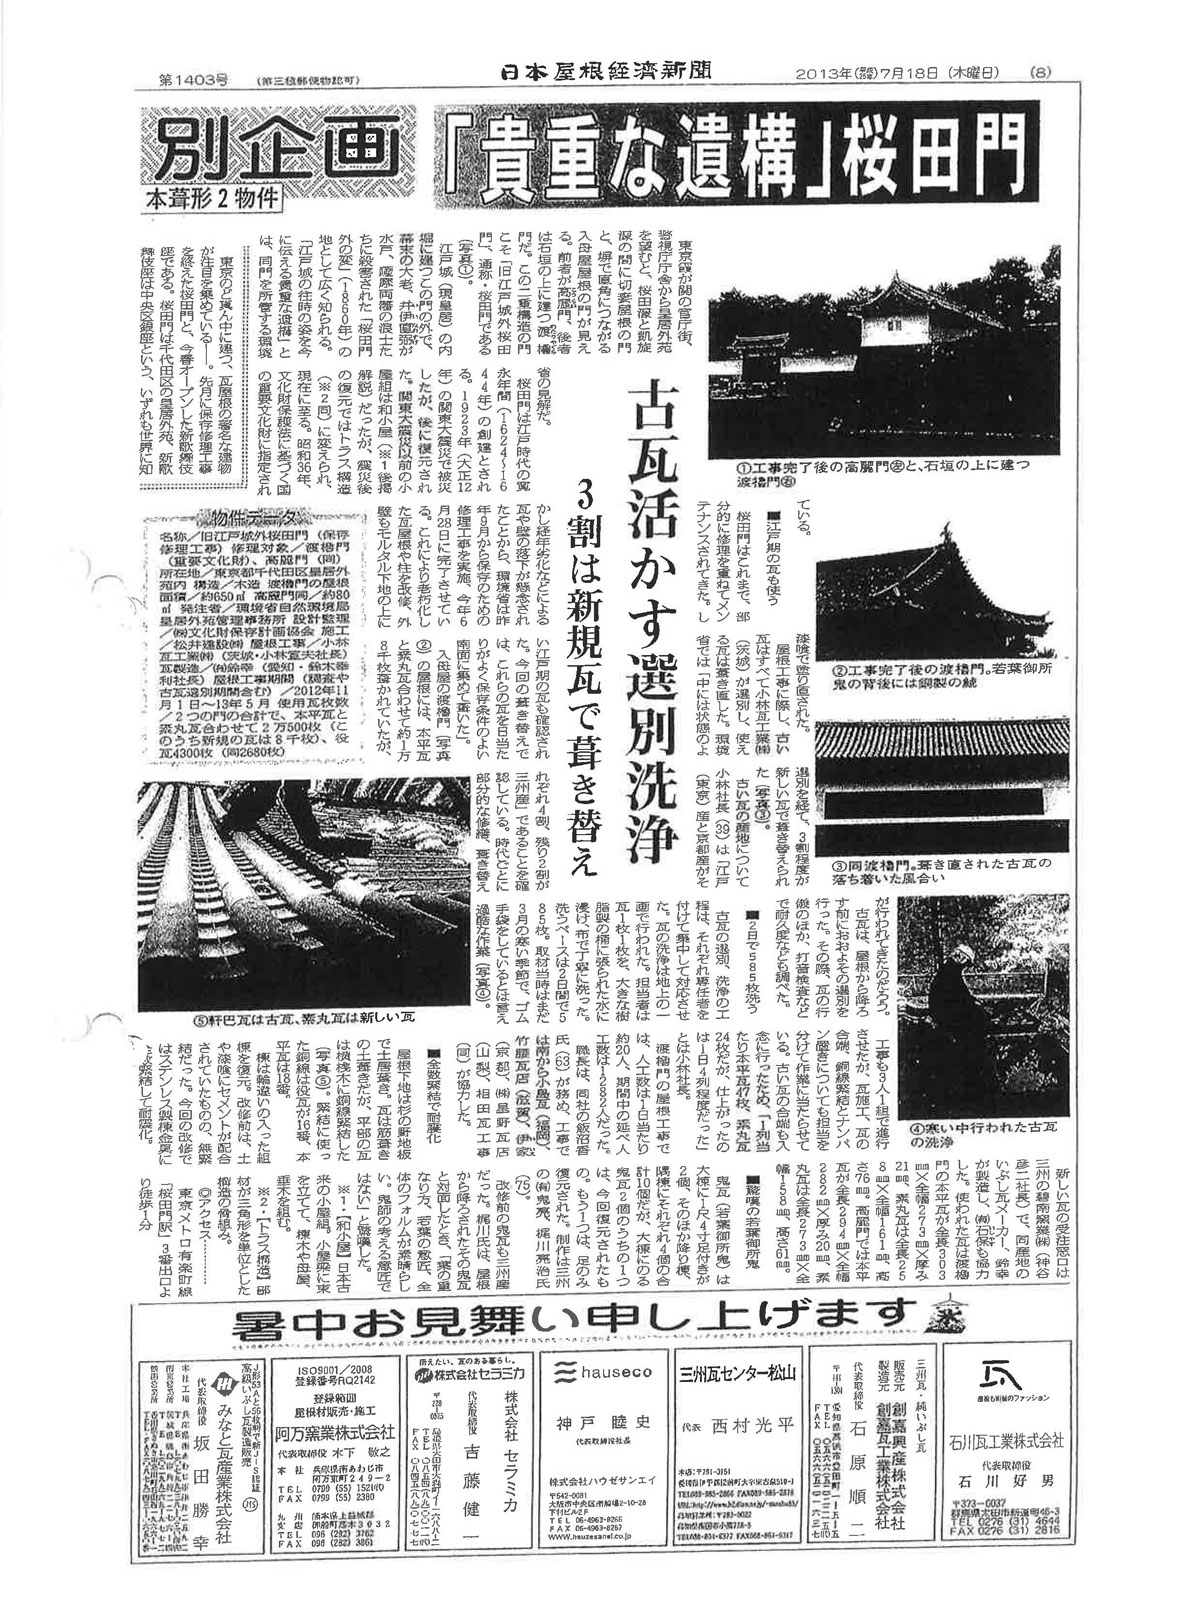 日本屋根経済新聞の切り抜き